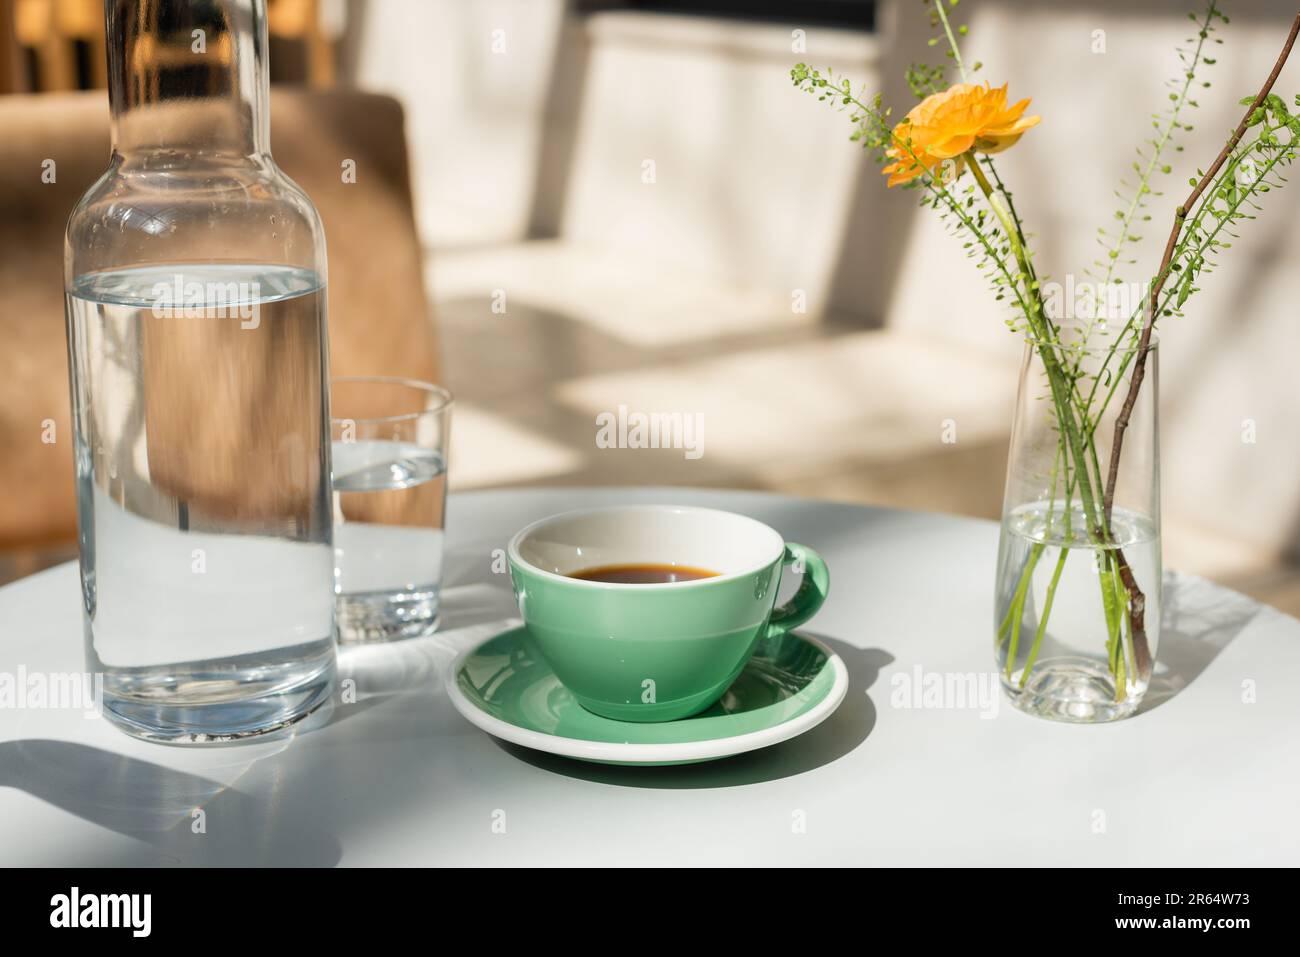 vaso con piante verdi e rosa gialle, bicchiere e decanter con acqua pura fresca, piattino, tazza con caffè nero su tavola rotonda bianca al mattino Foto Stock